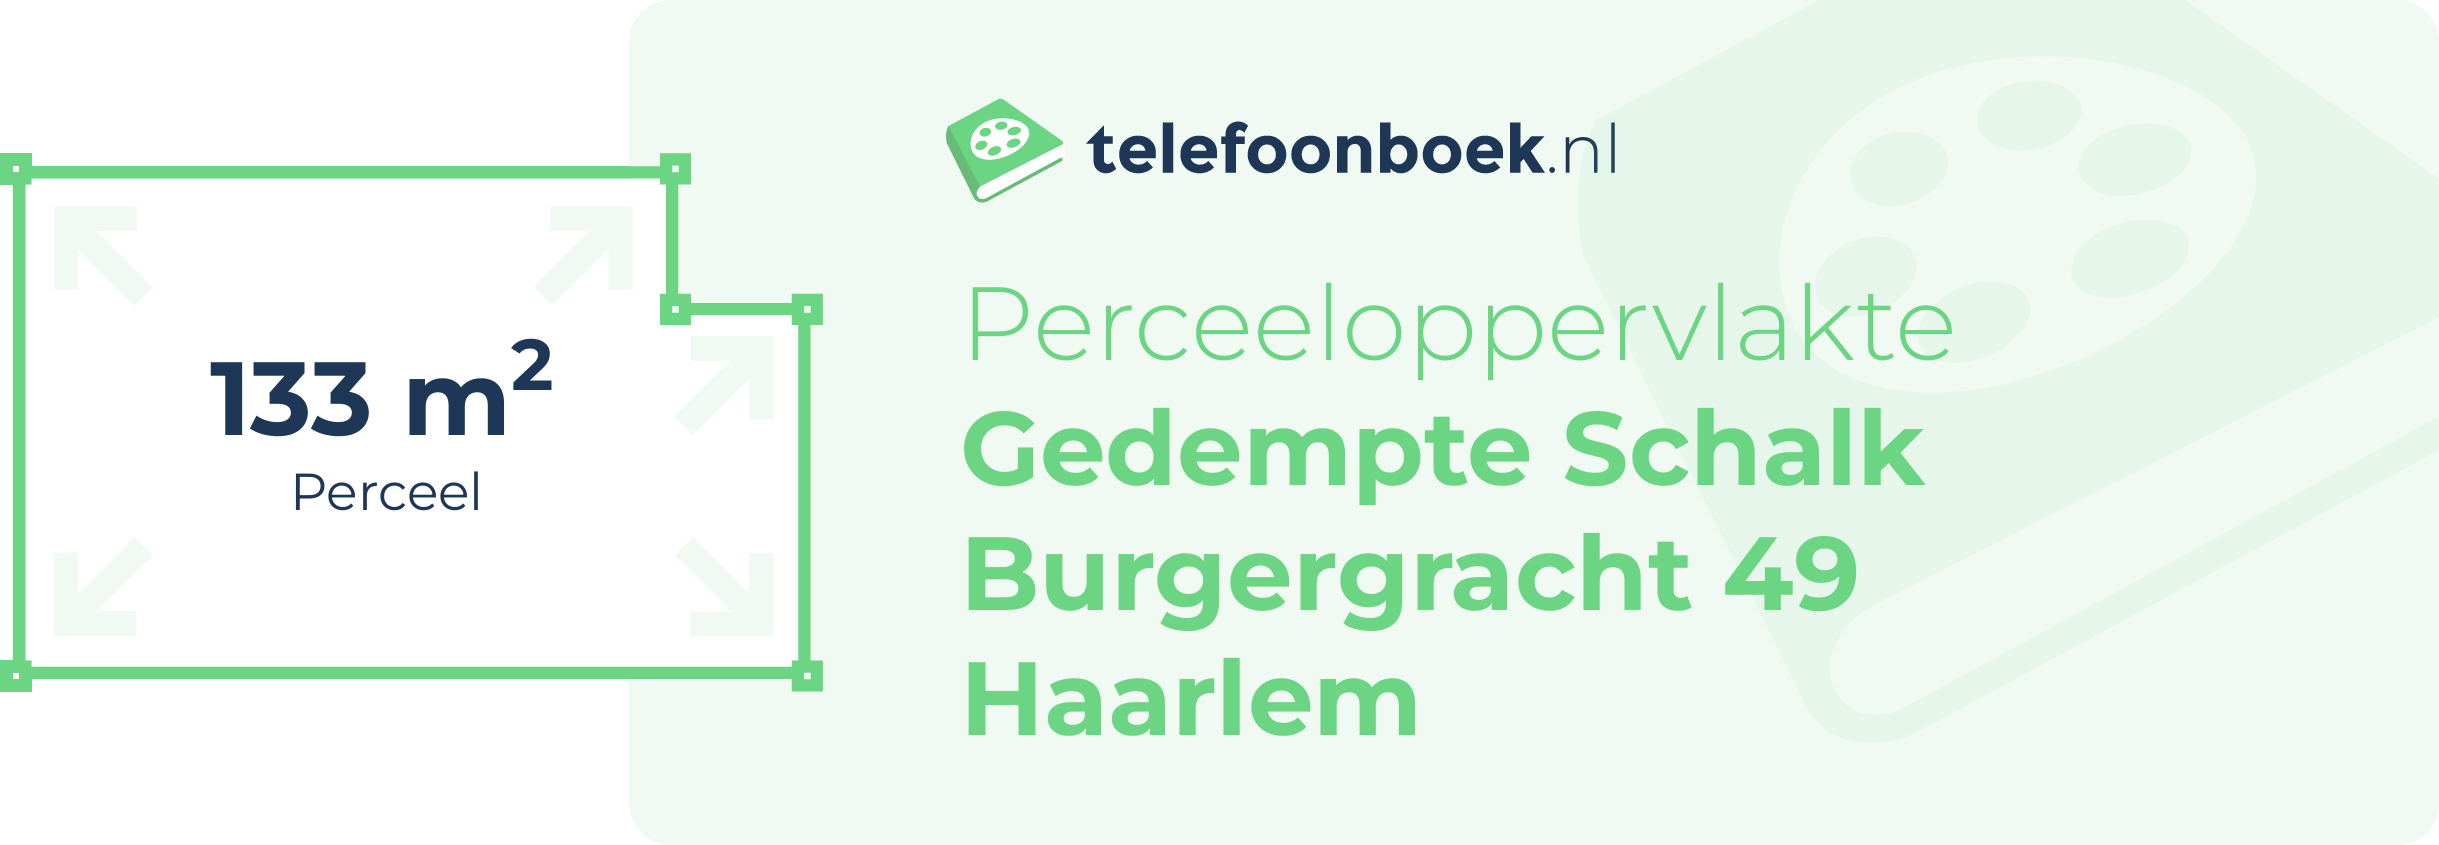 Perceeloppervlakte Gedempte Schalk Burgergracht 49 Haarlem